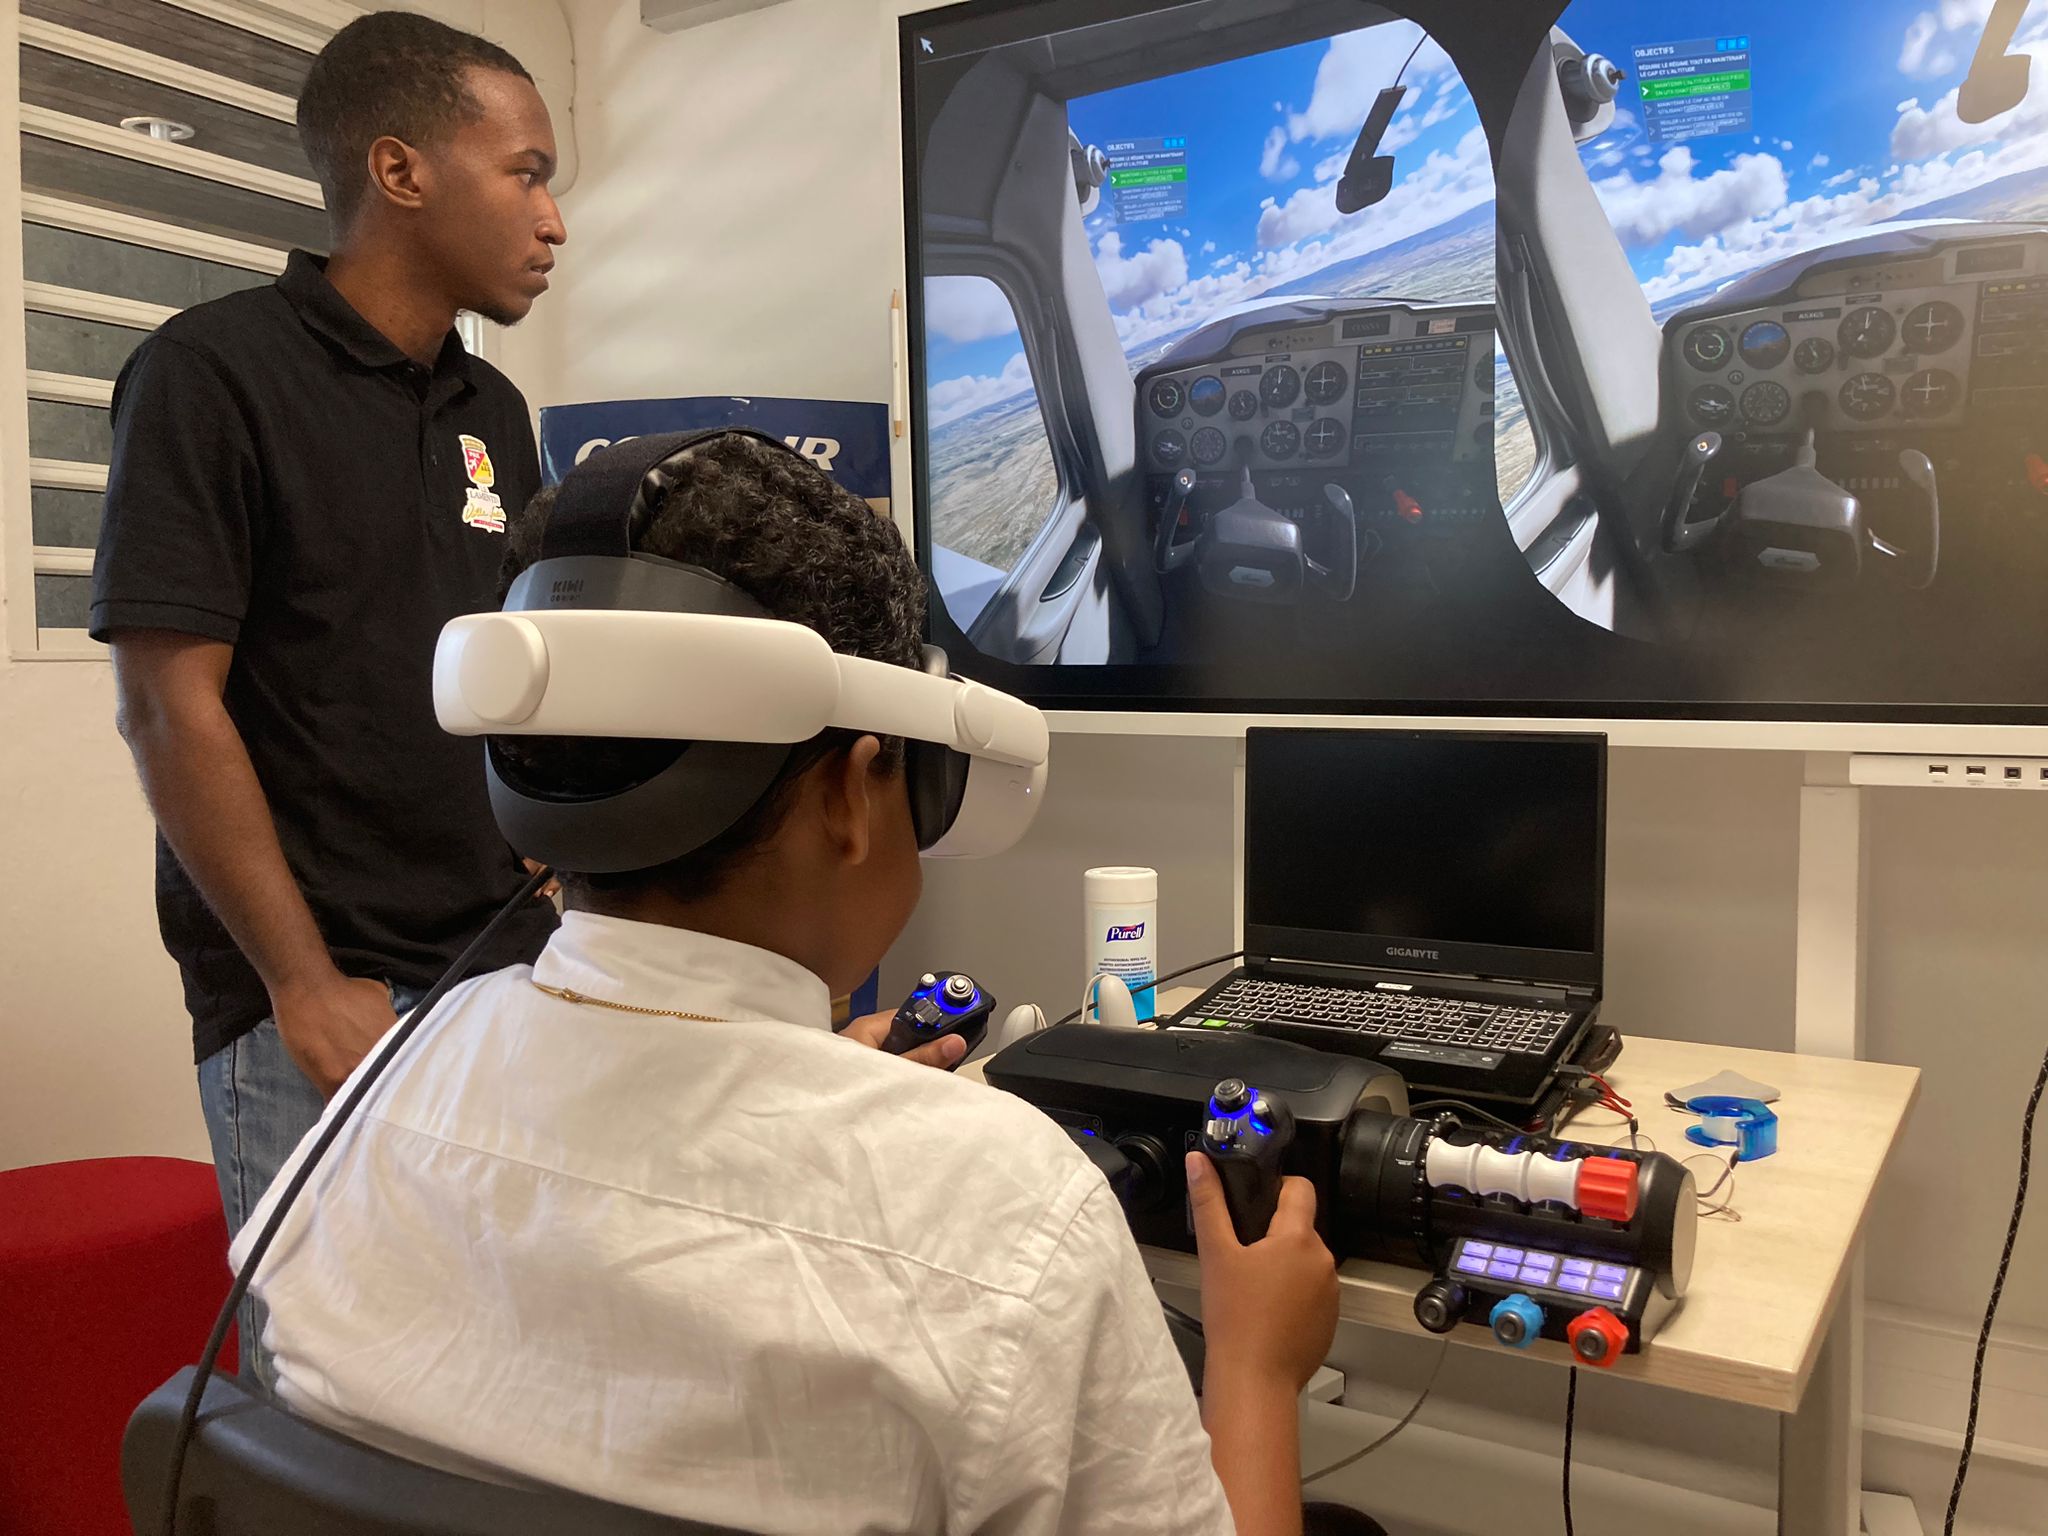     Des collégiens pilotent un avion grâce à la réalité virtuelle !

